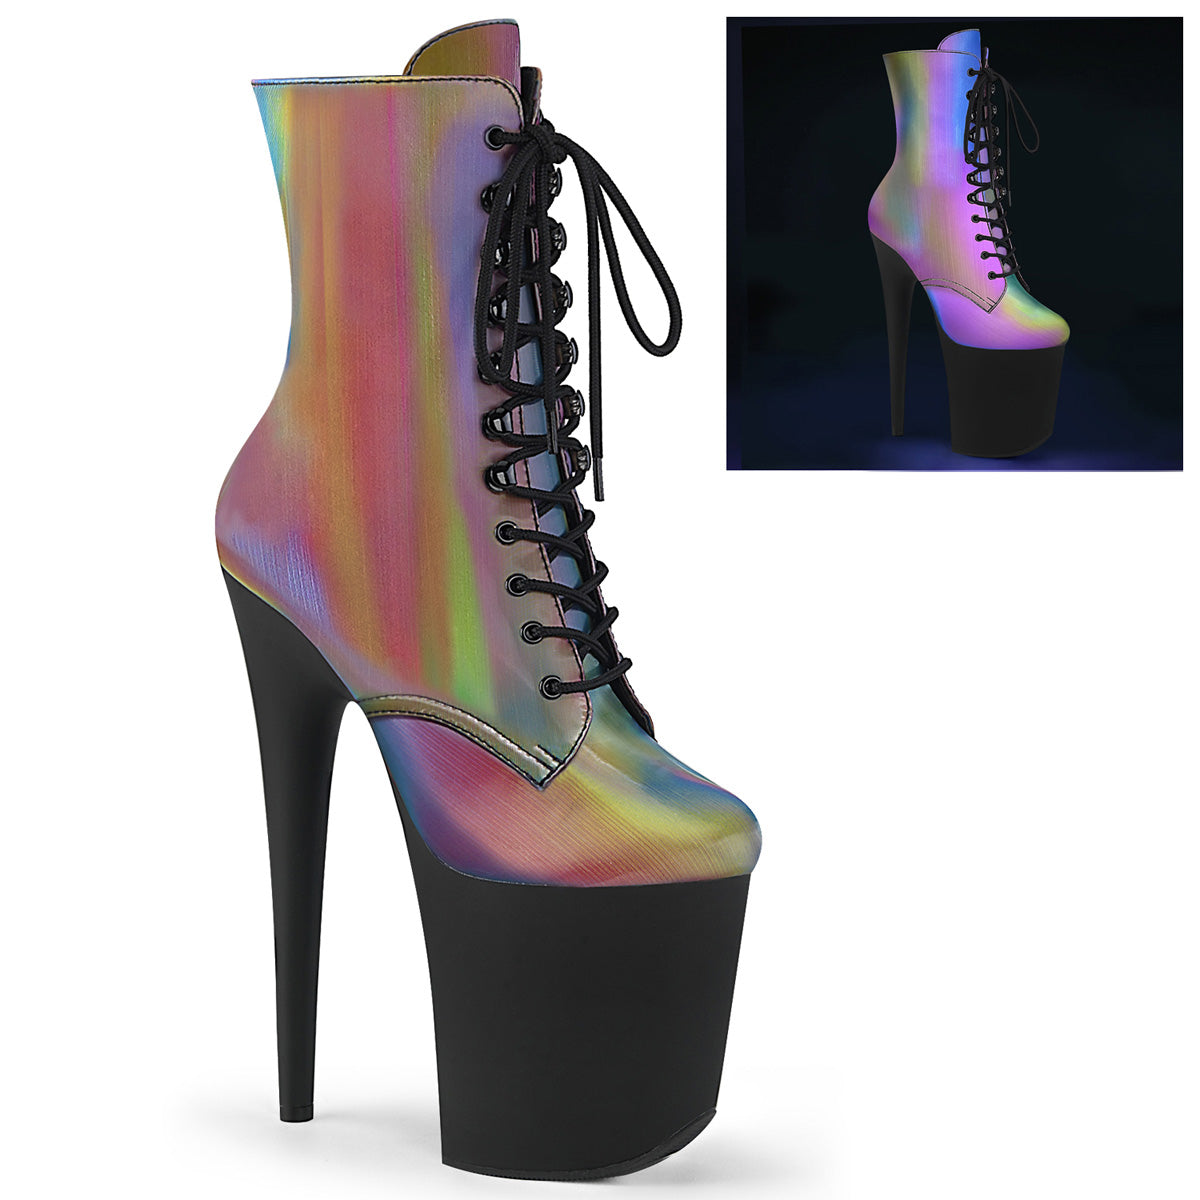 FLAMINGO-1020REFL Strippers Heels Pleaser Platforms (Exotic Dancing) Rainbow Reflective/Blk Matte